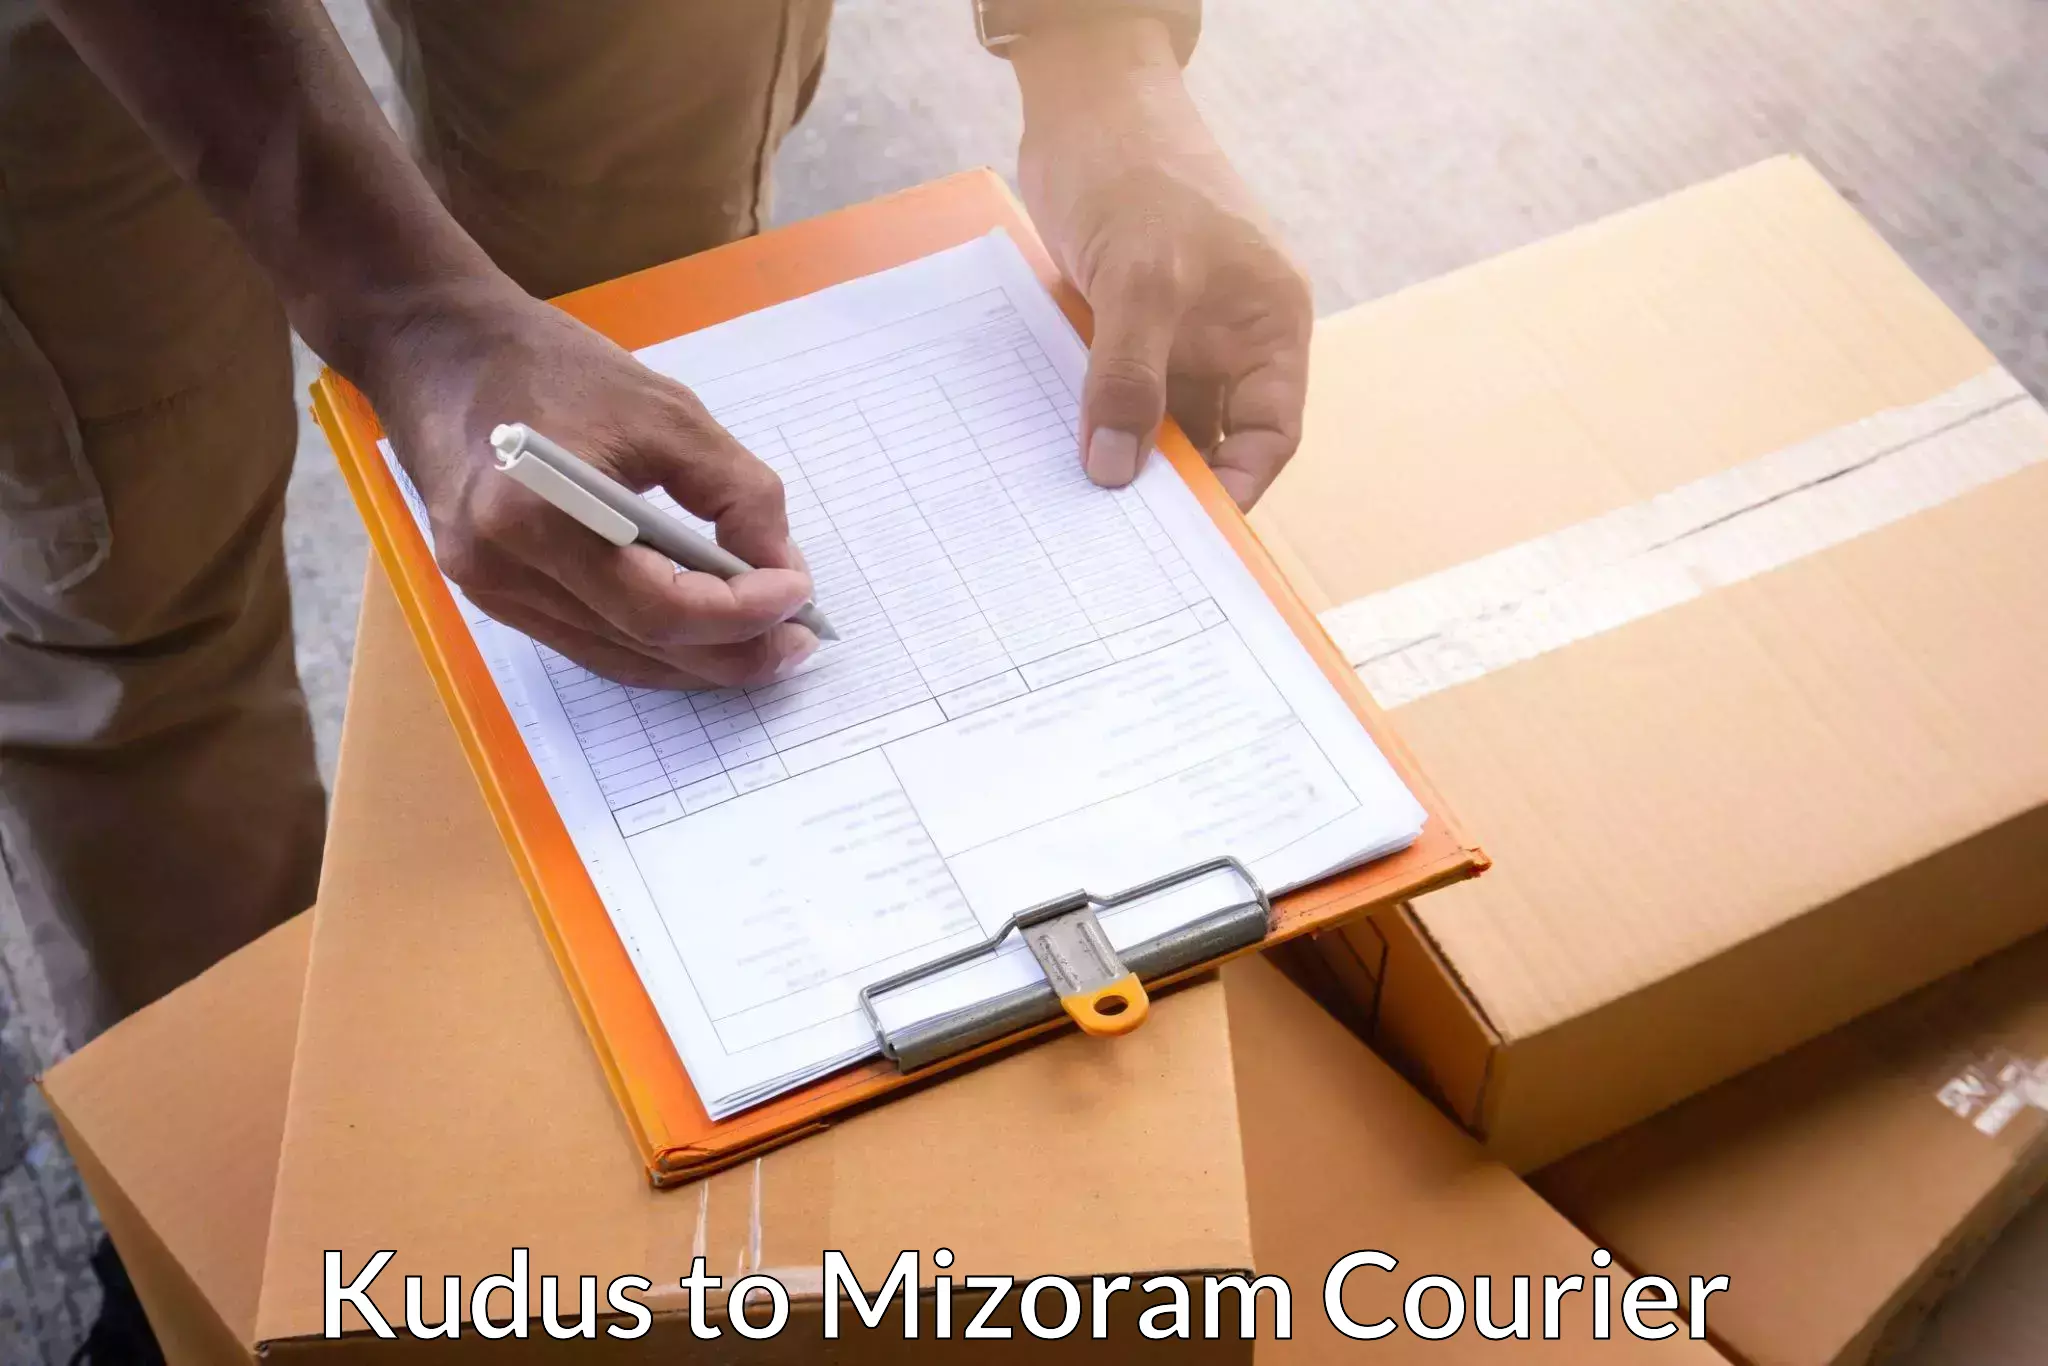 Customer-focused courier Kudus to Serchhip